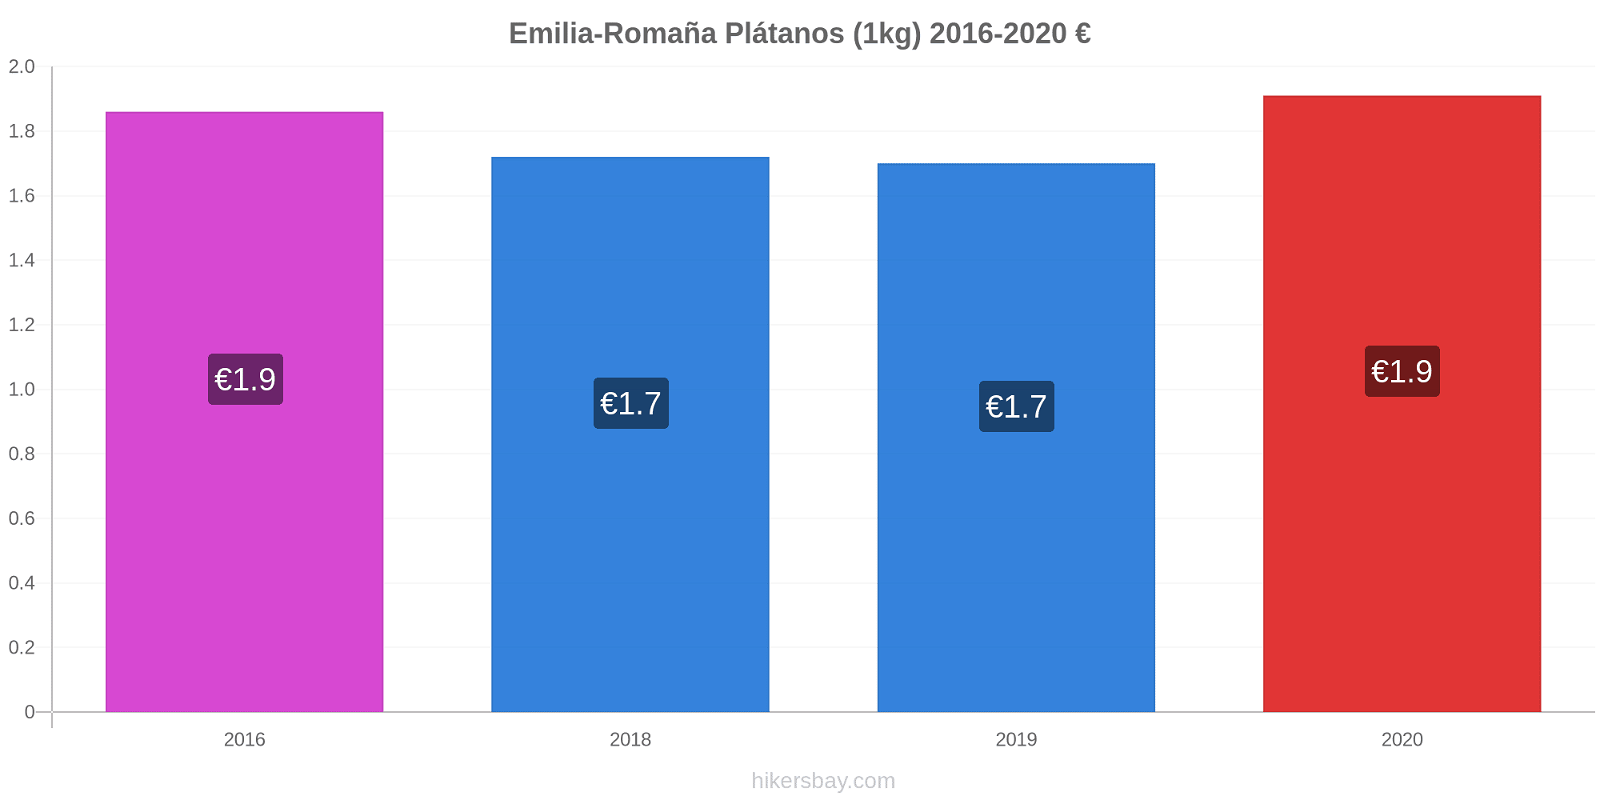 Emilia-Romaña cambios de precios Plátano (1kg) hikersbay.com